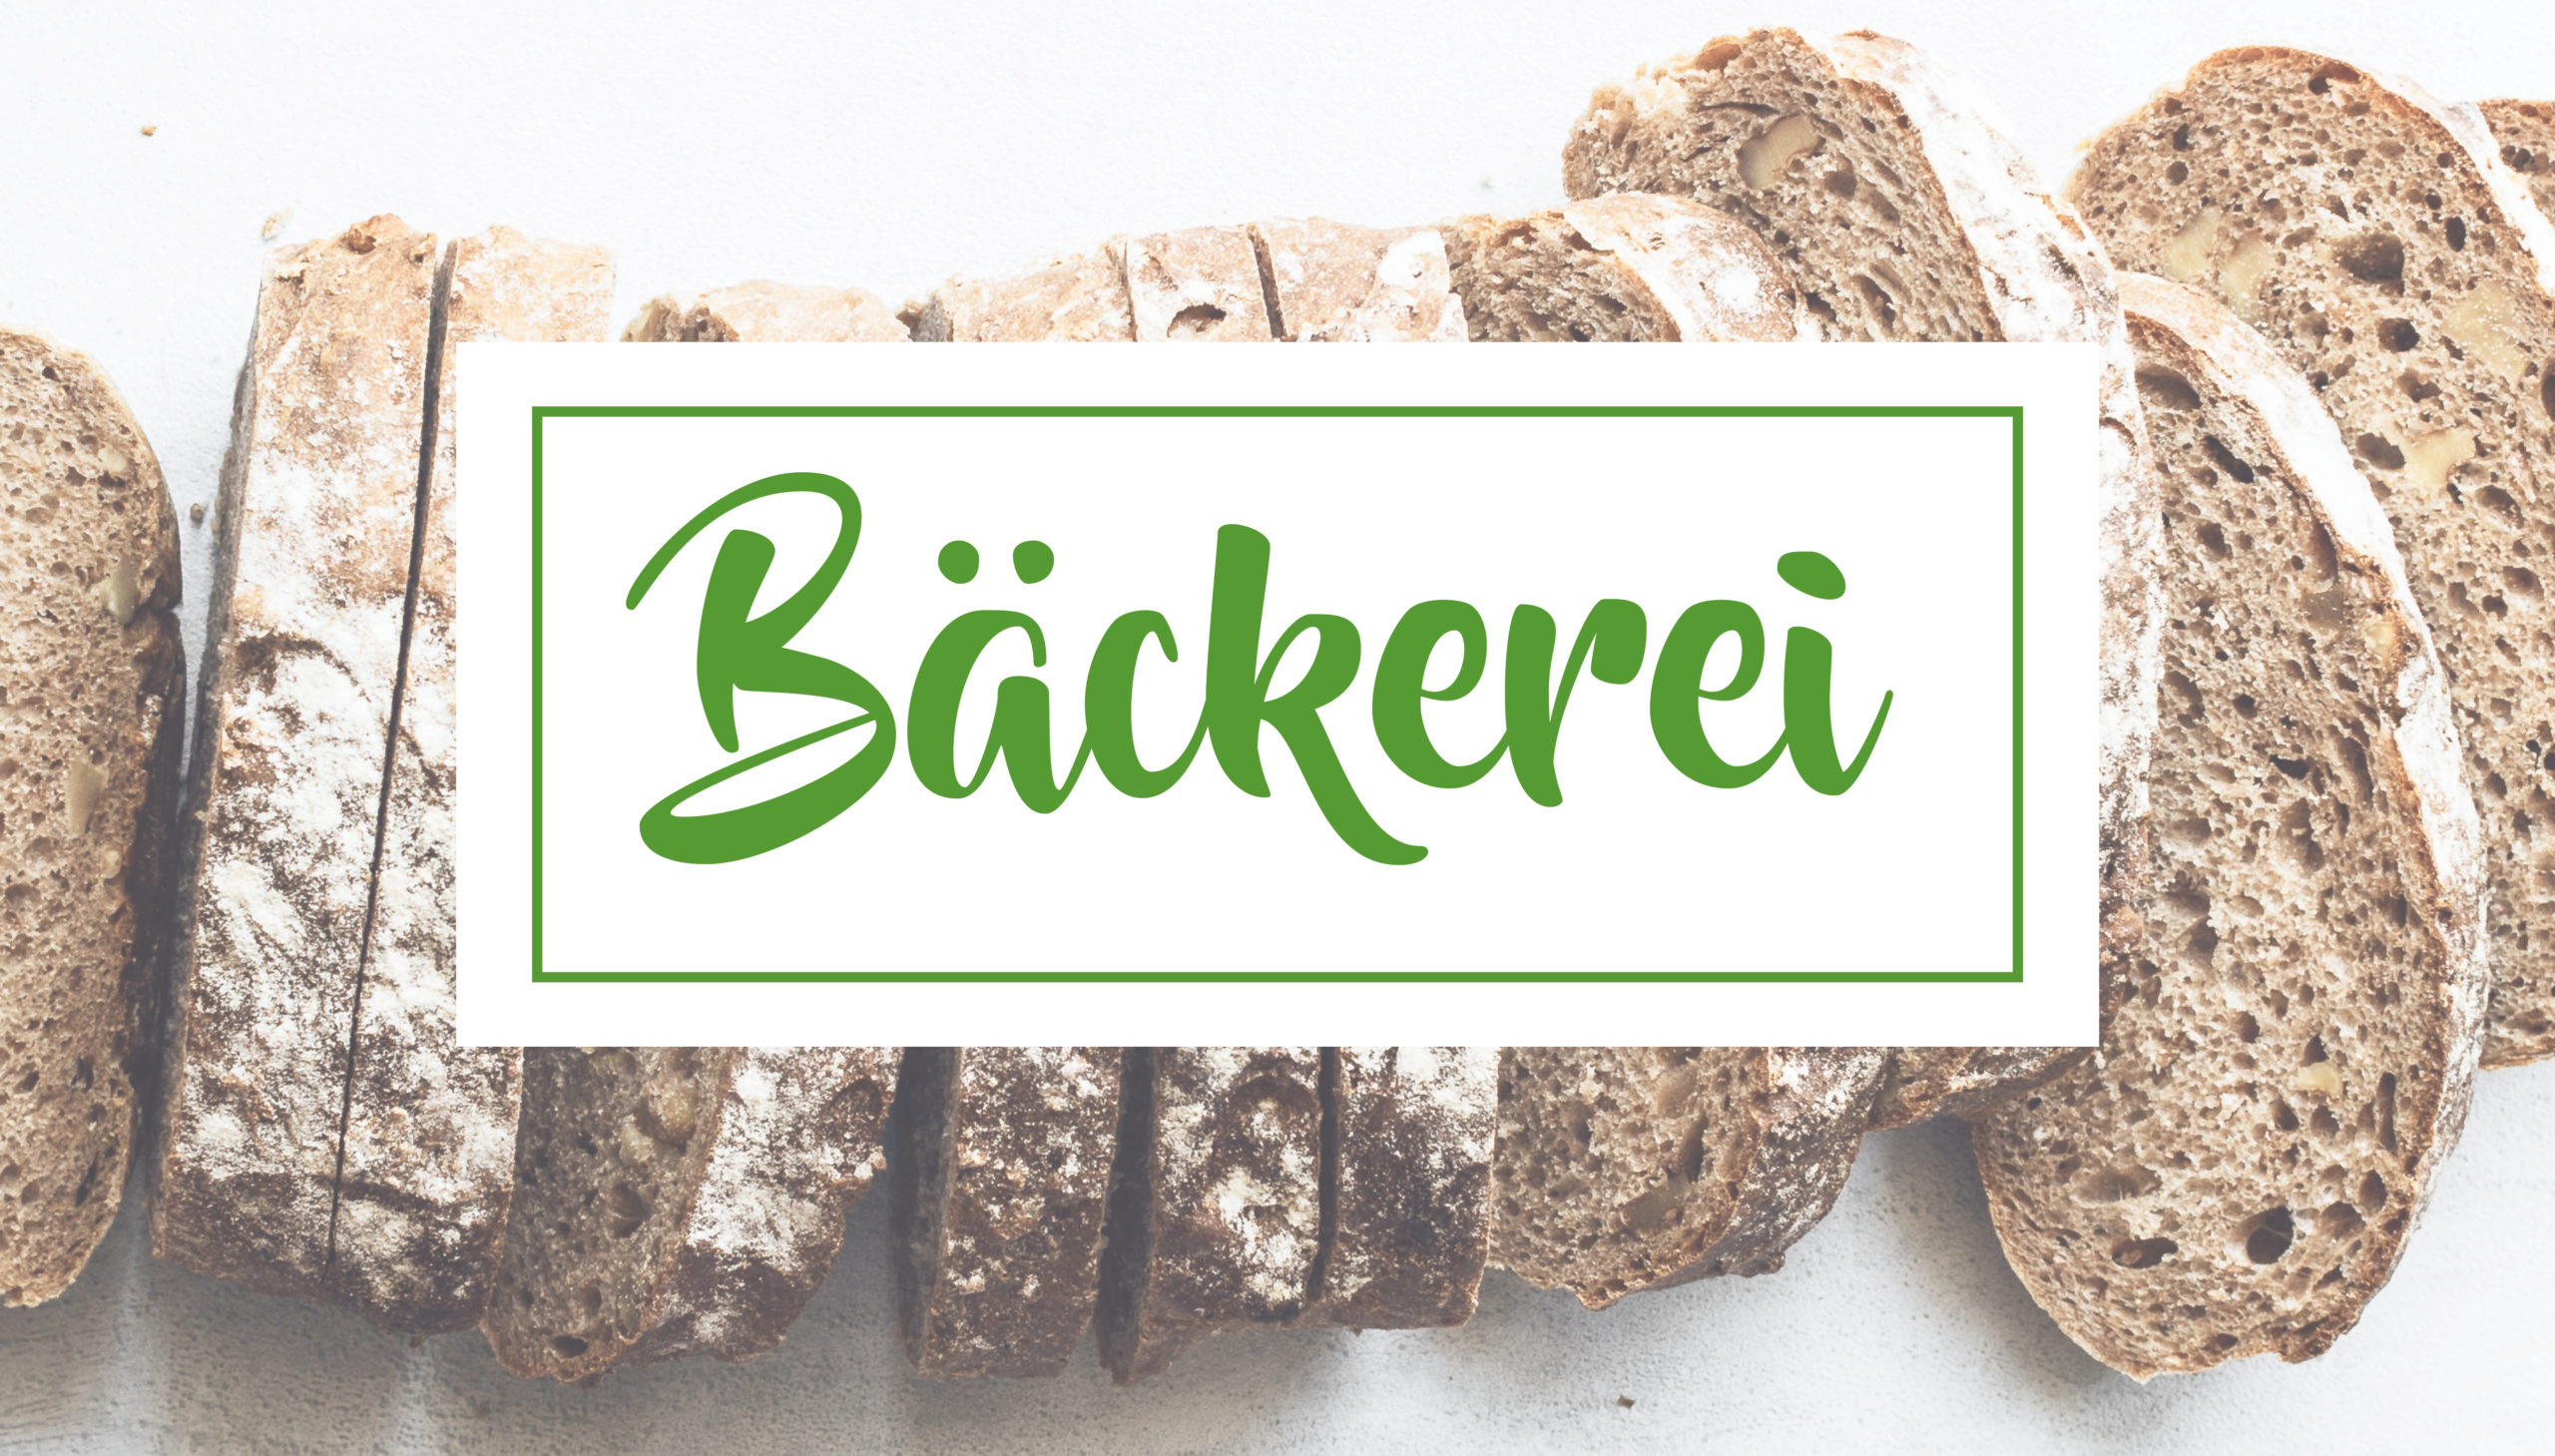 Bäckerei - Dornwiesenhof in Fichtenberg-Mittelrot / Ferienwohnung - Bäckerei - Hofladen - Eis - Schnapsbrennerei - Events